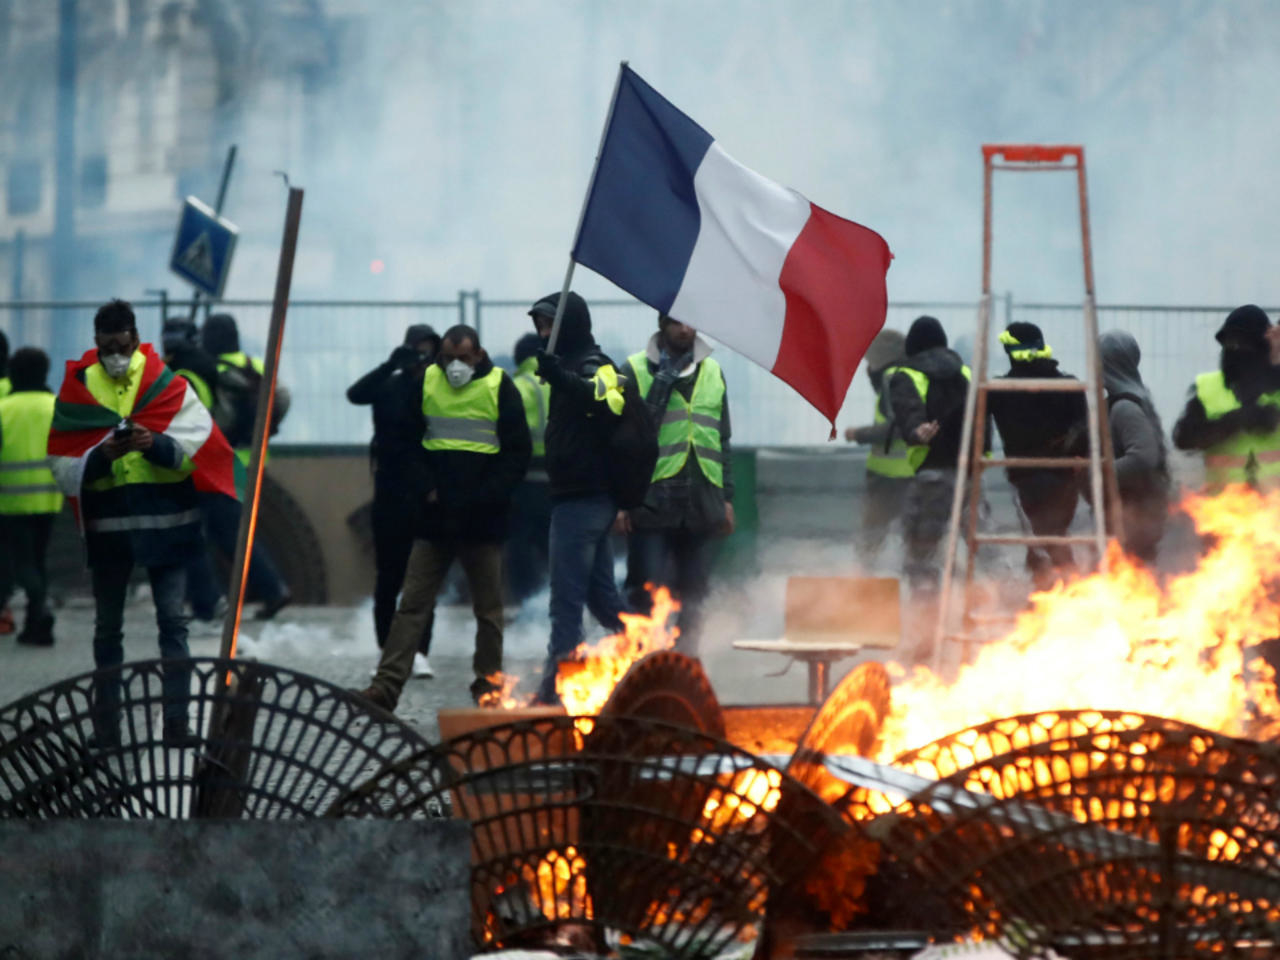 https://www.france24.com/es/20181208-desarrollo-protestas-chalecos-amarillos-francia